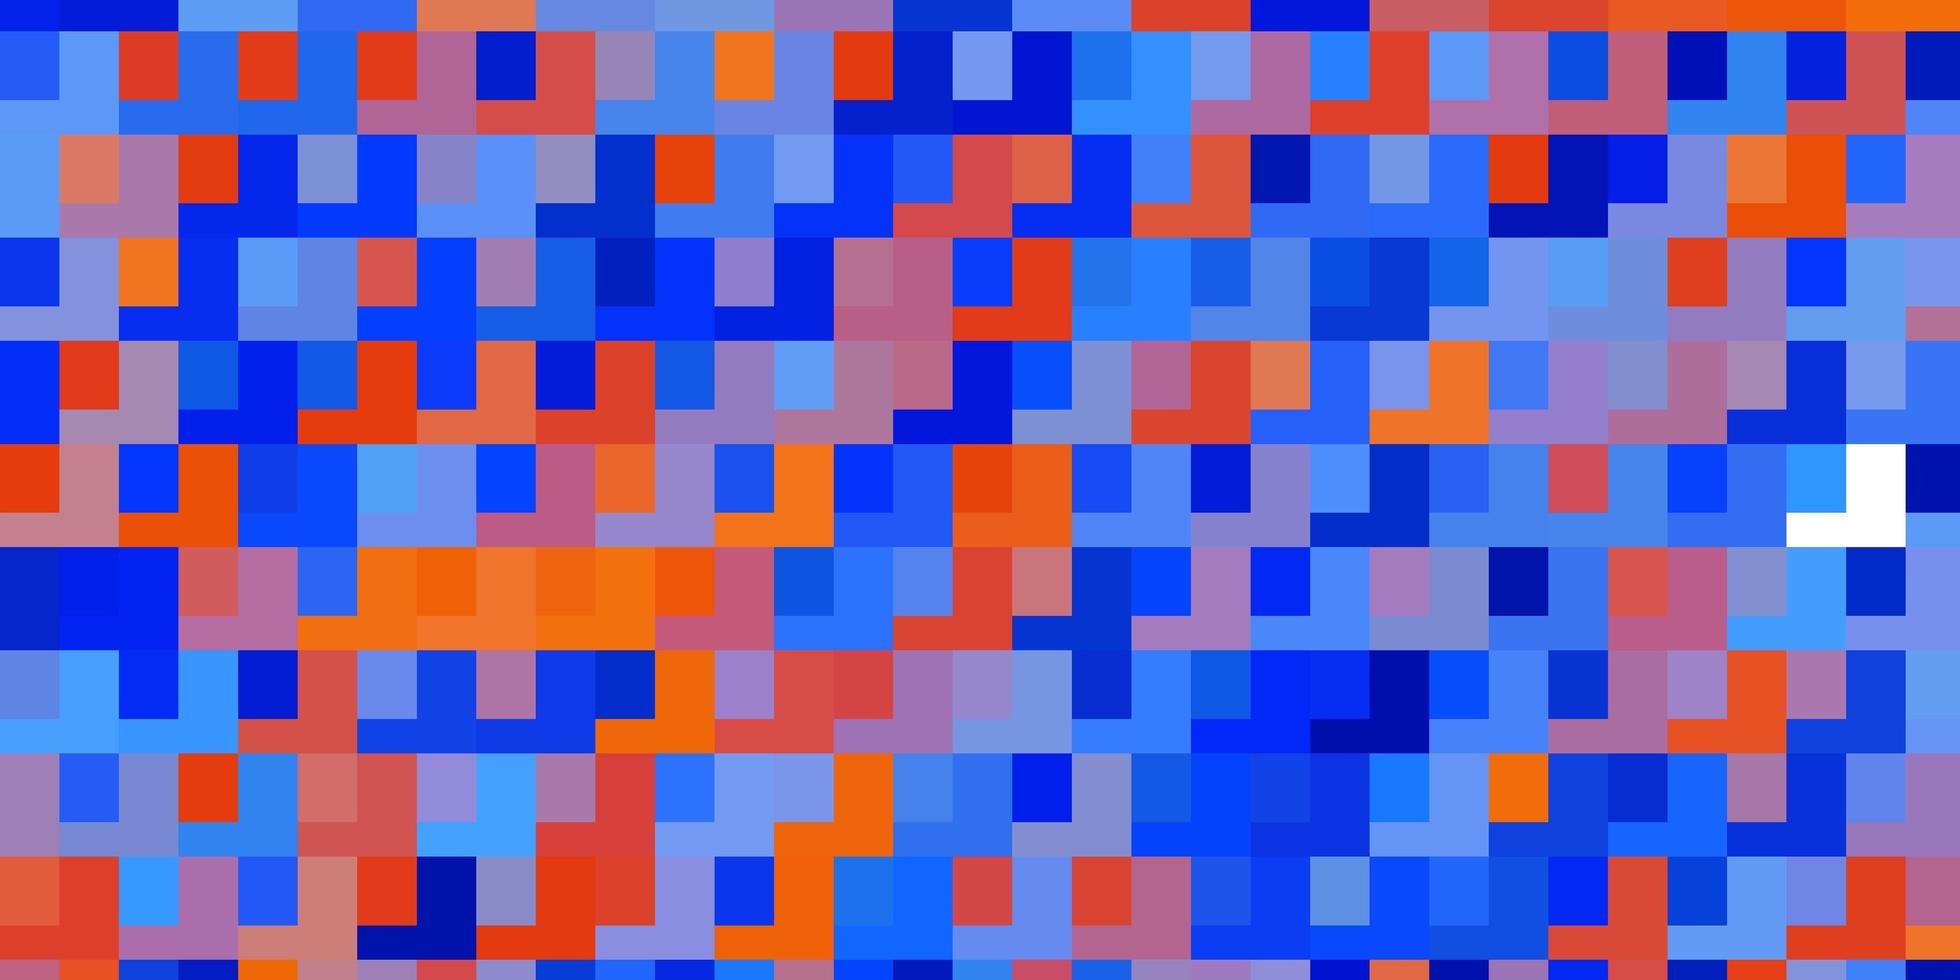 Plantilla de vector rojo azul claro en ilustración de rectángulos con un conjunto de patrón de rectángulos degradados para anuncios comerciales